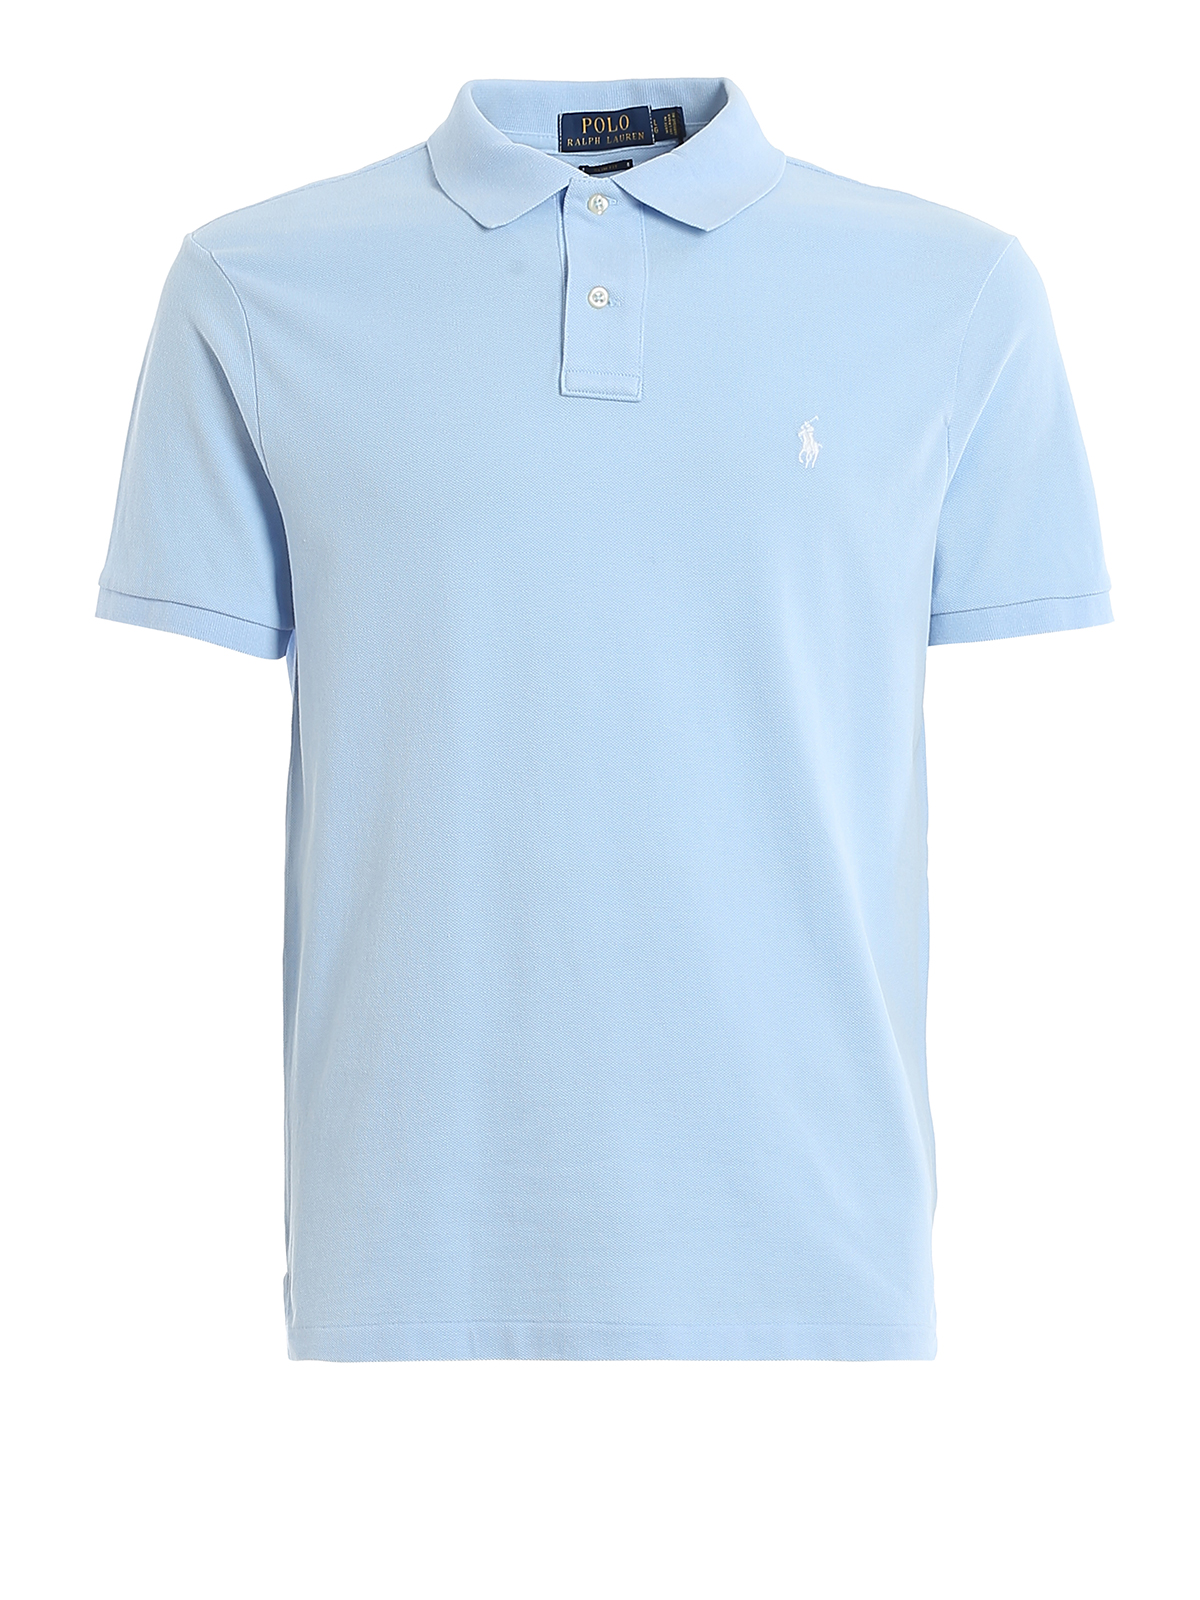 - cotton Polo Ralph Lauren shirts - 710795080016 pique Light fit Polo blue slim polo